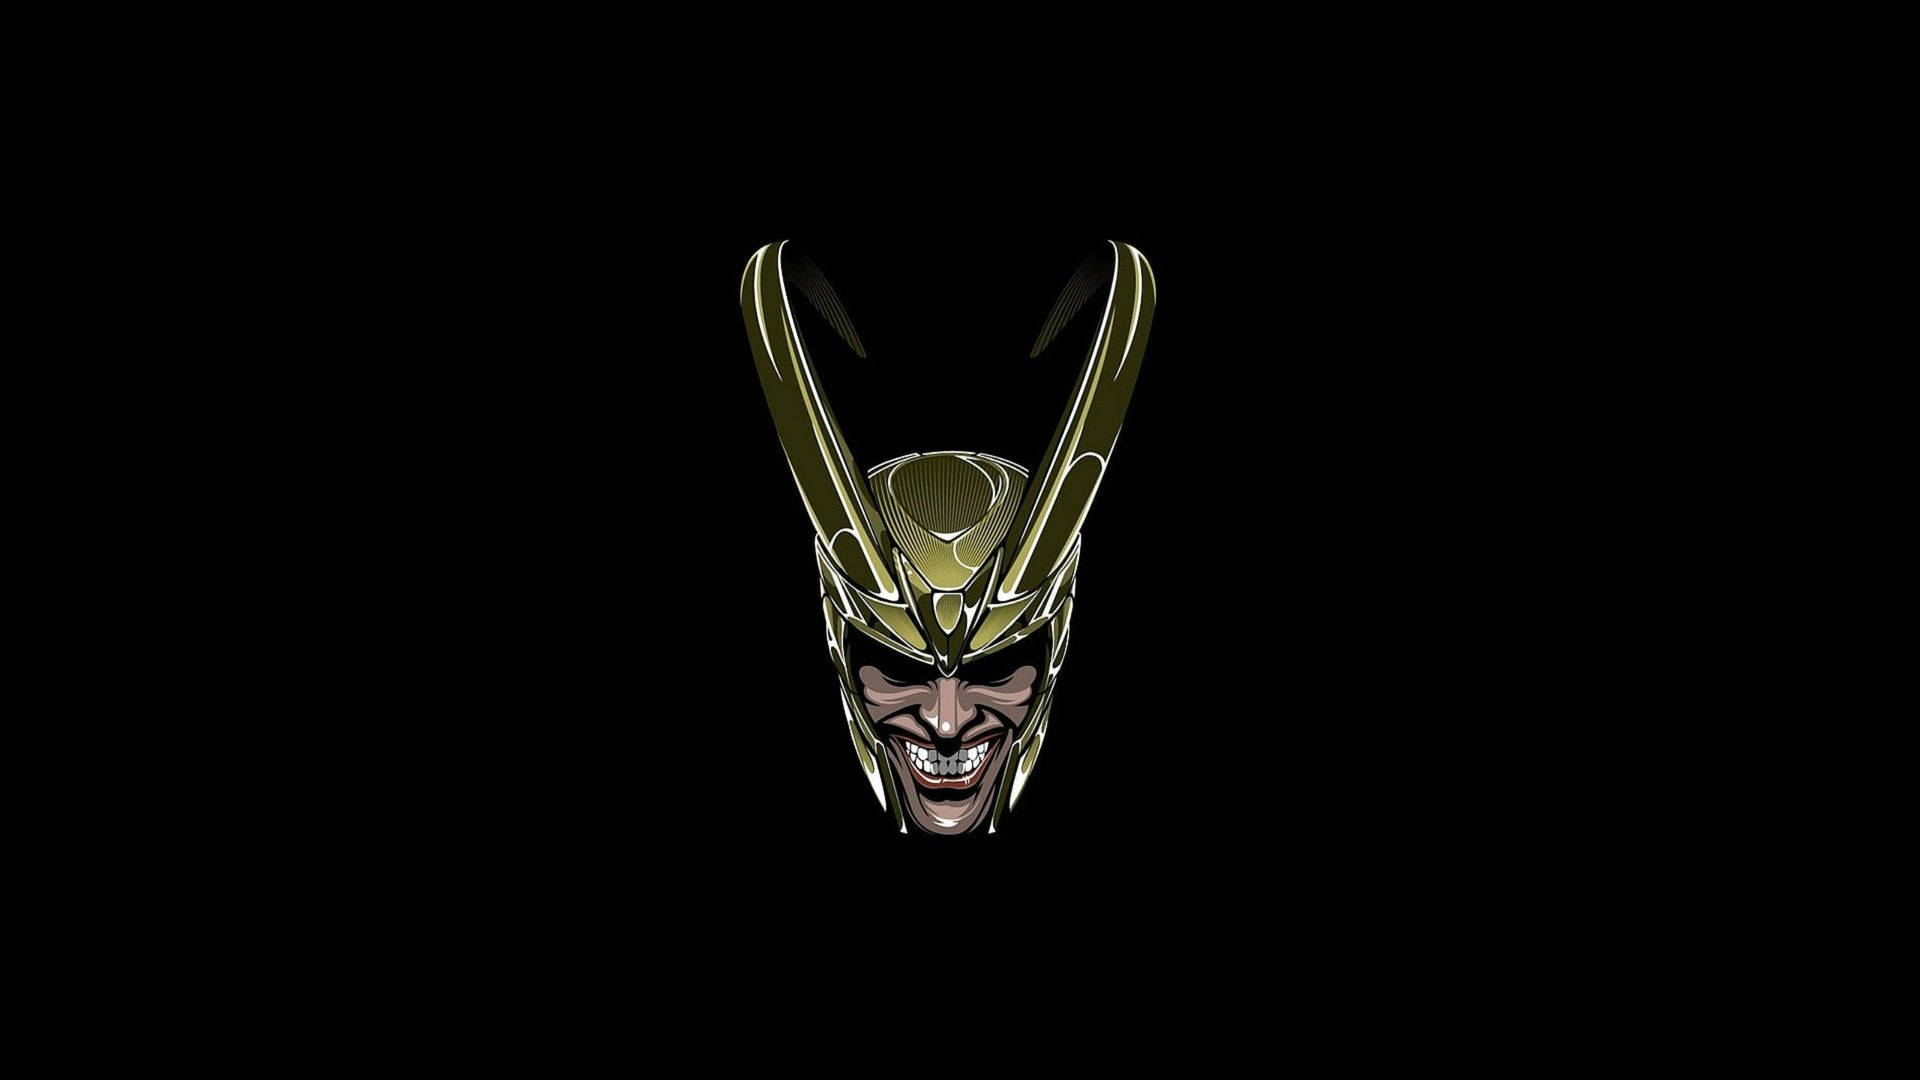 Loki Head In Black